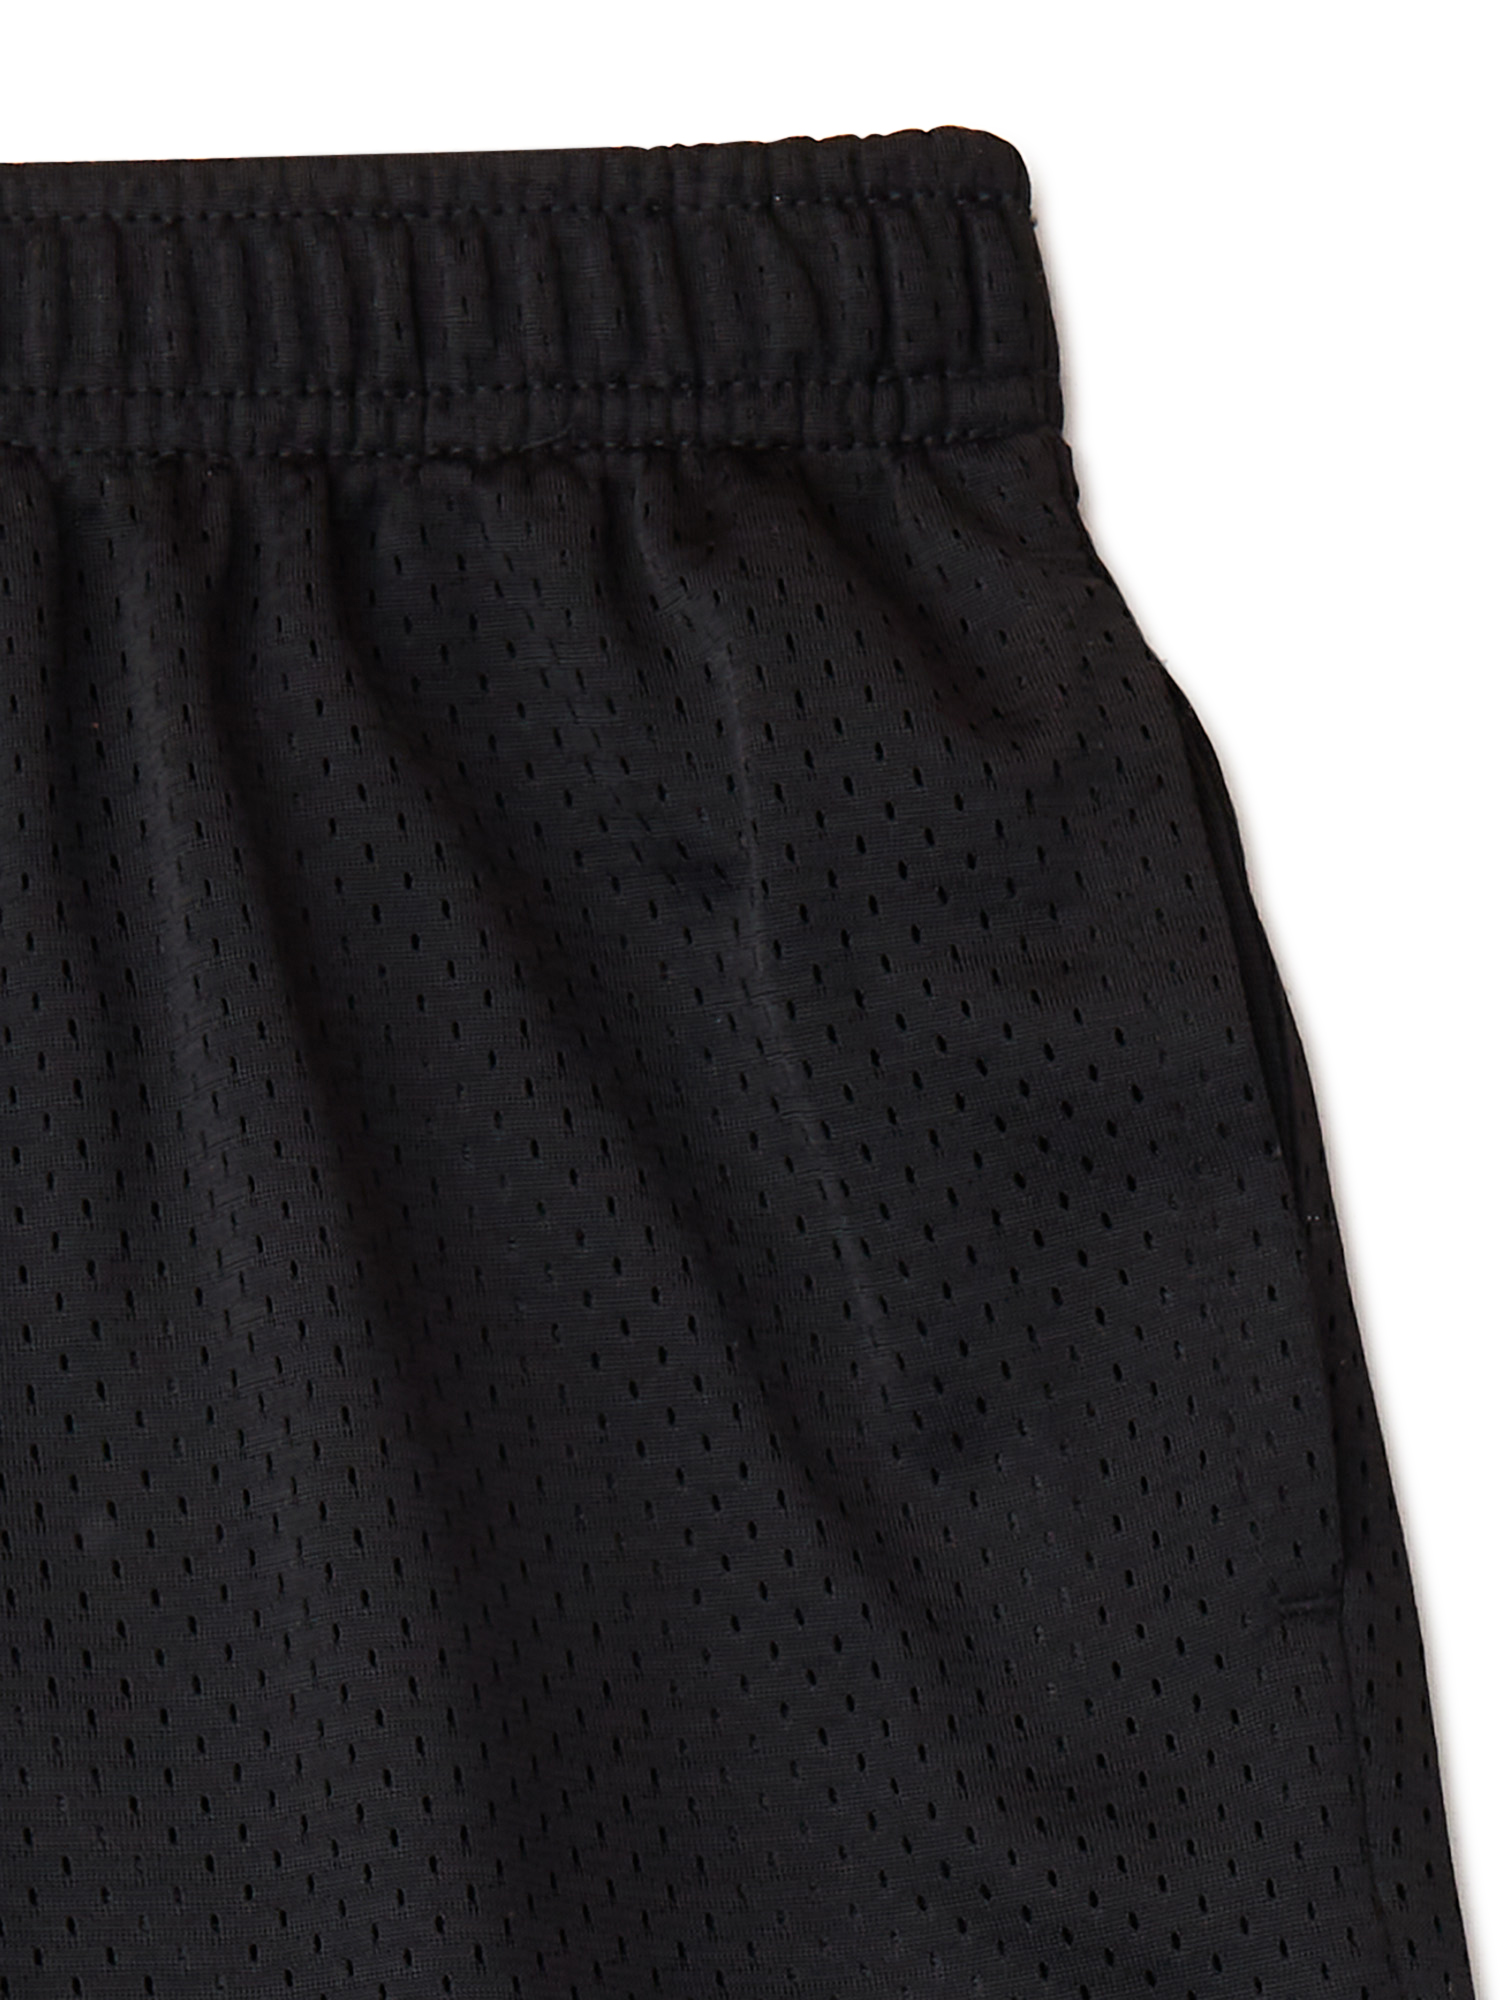 Athletic Works Boys Mesh Shorts, 3-Pack, Sizes 4-18 & Husky - image 4 of 4